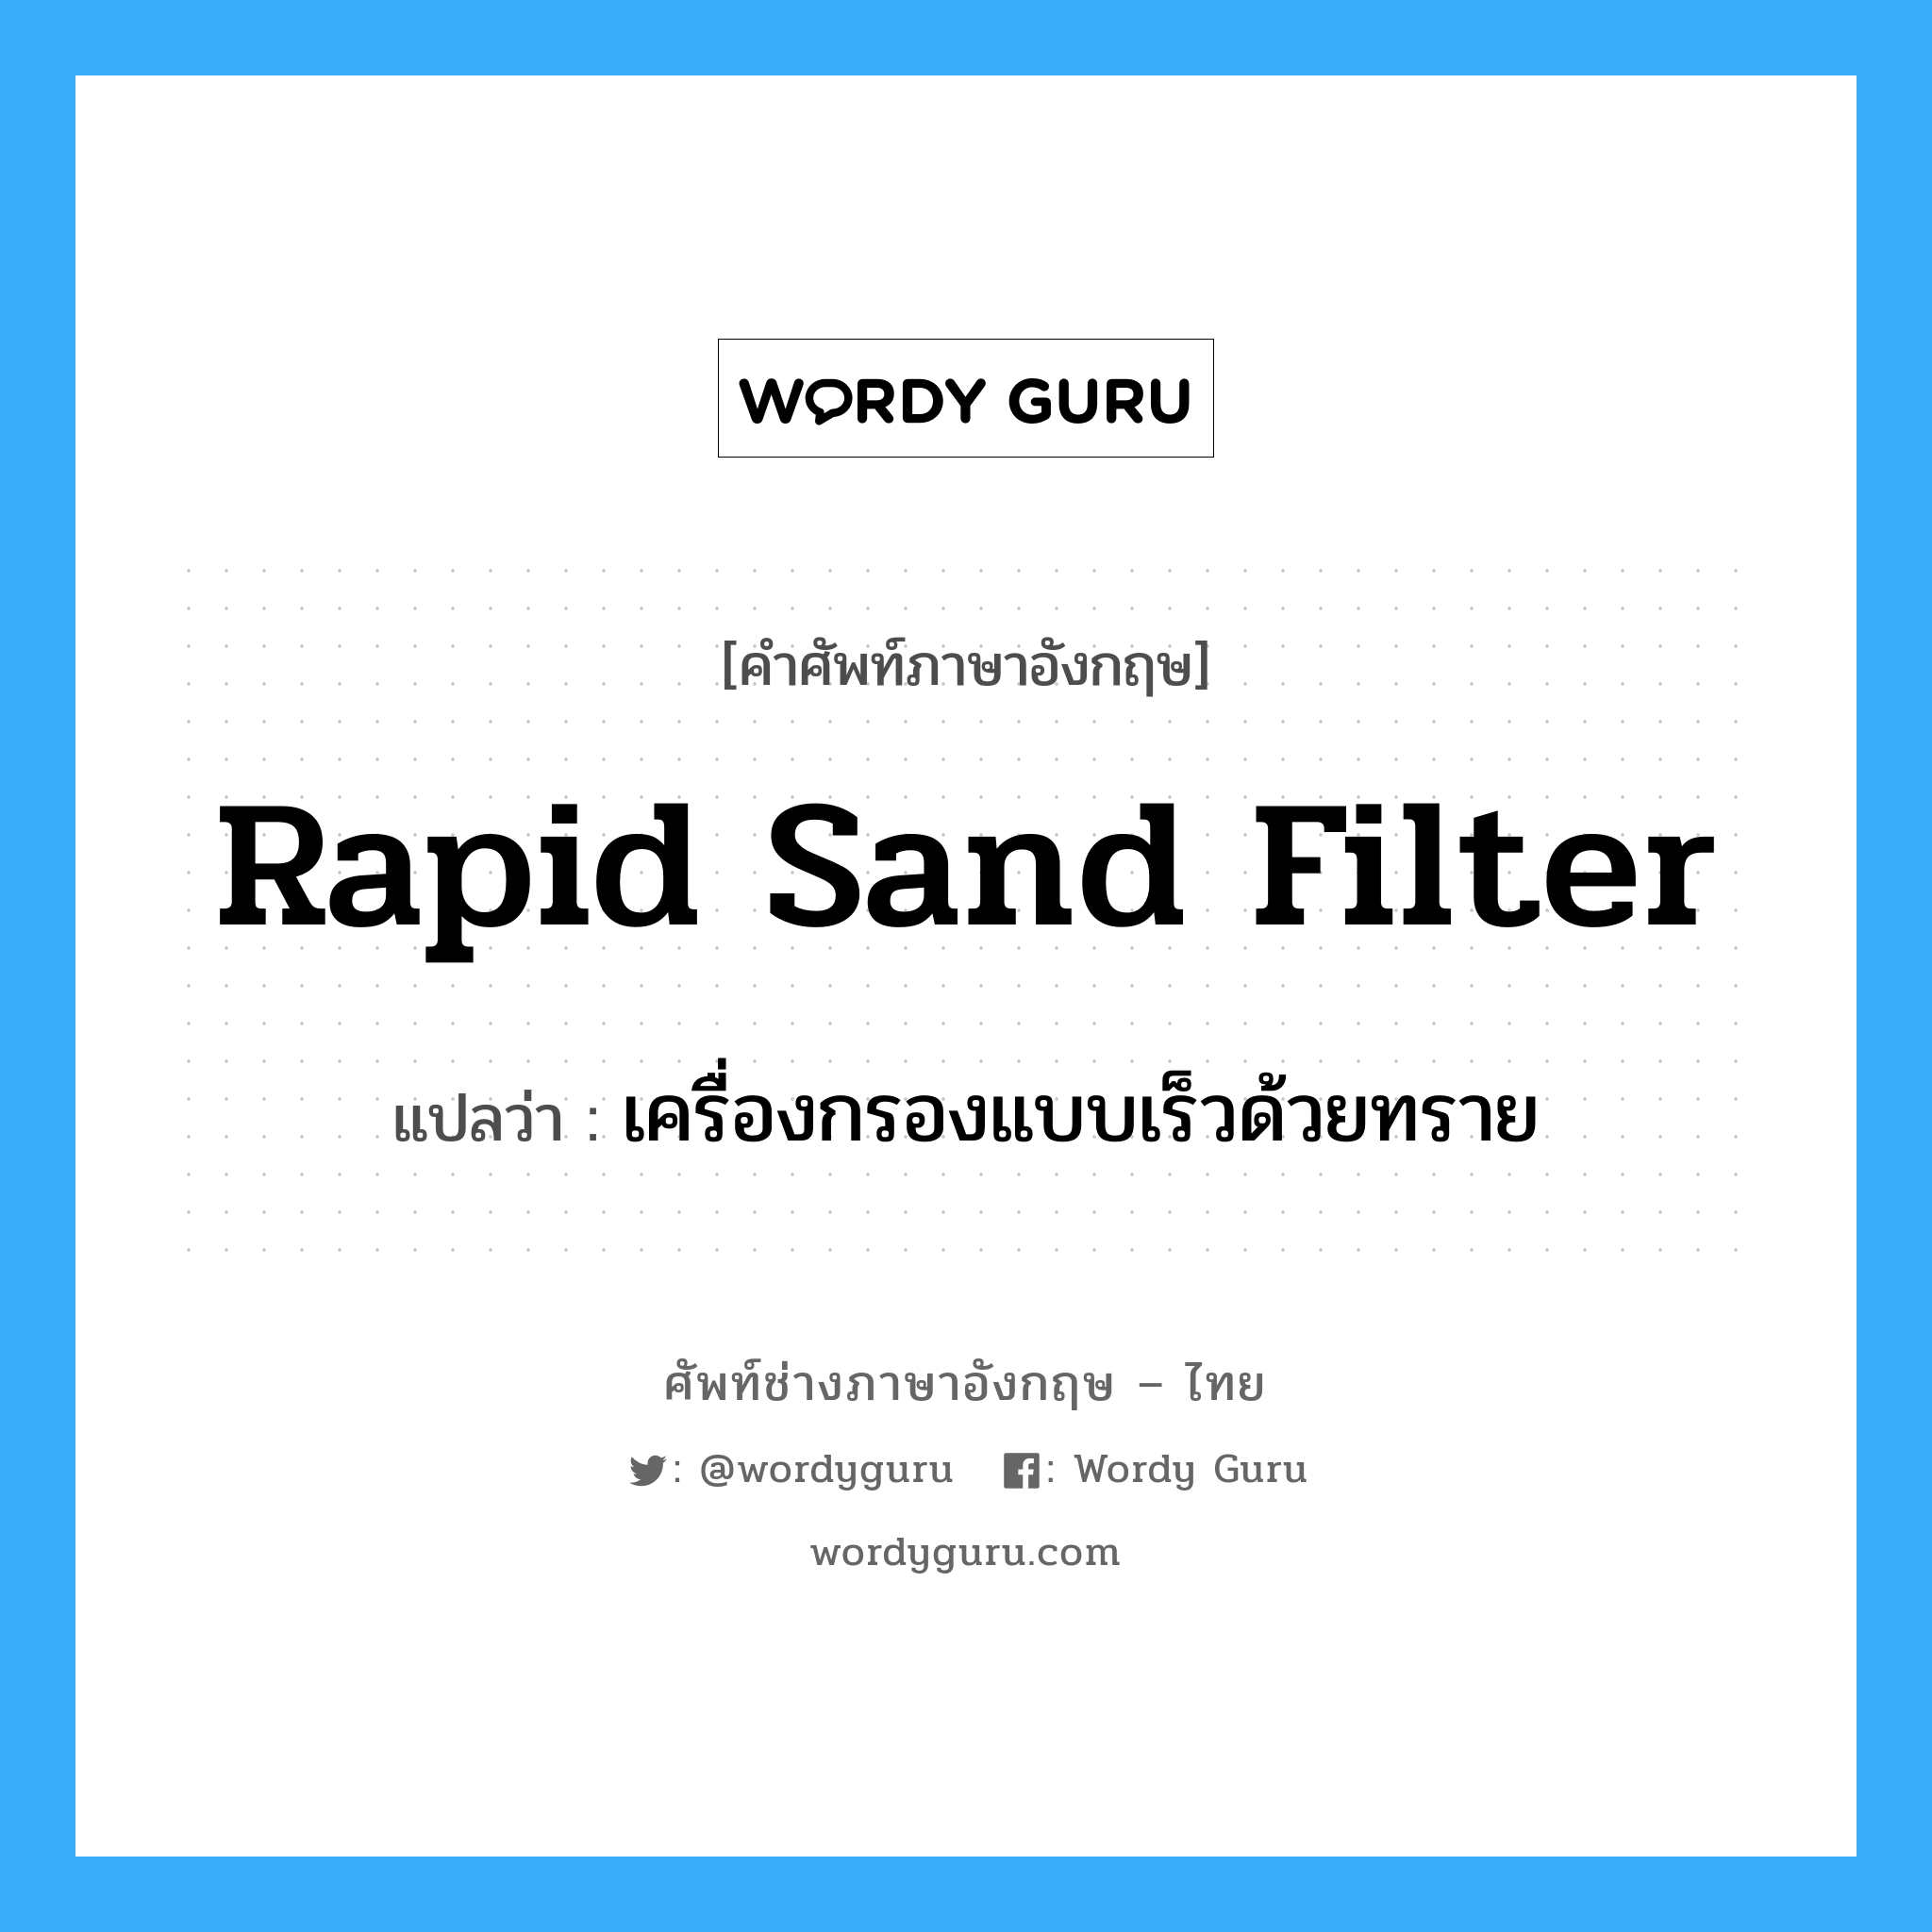 rapid sand filter แปลว่า?, คำศัพท์ช่างภาษาอังกฤษ - ไทย rapid sand filter คำศัพท์ภาษาอังกฤษ rapid sand filter แปลว่า เครื่องกรองแบบเร็วด้วยทราย